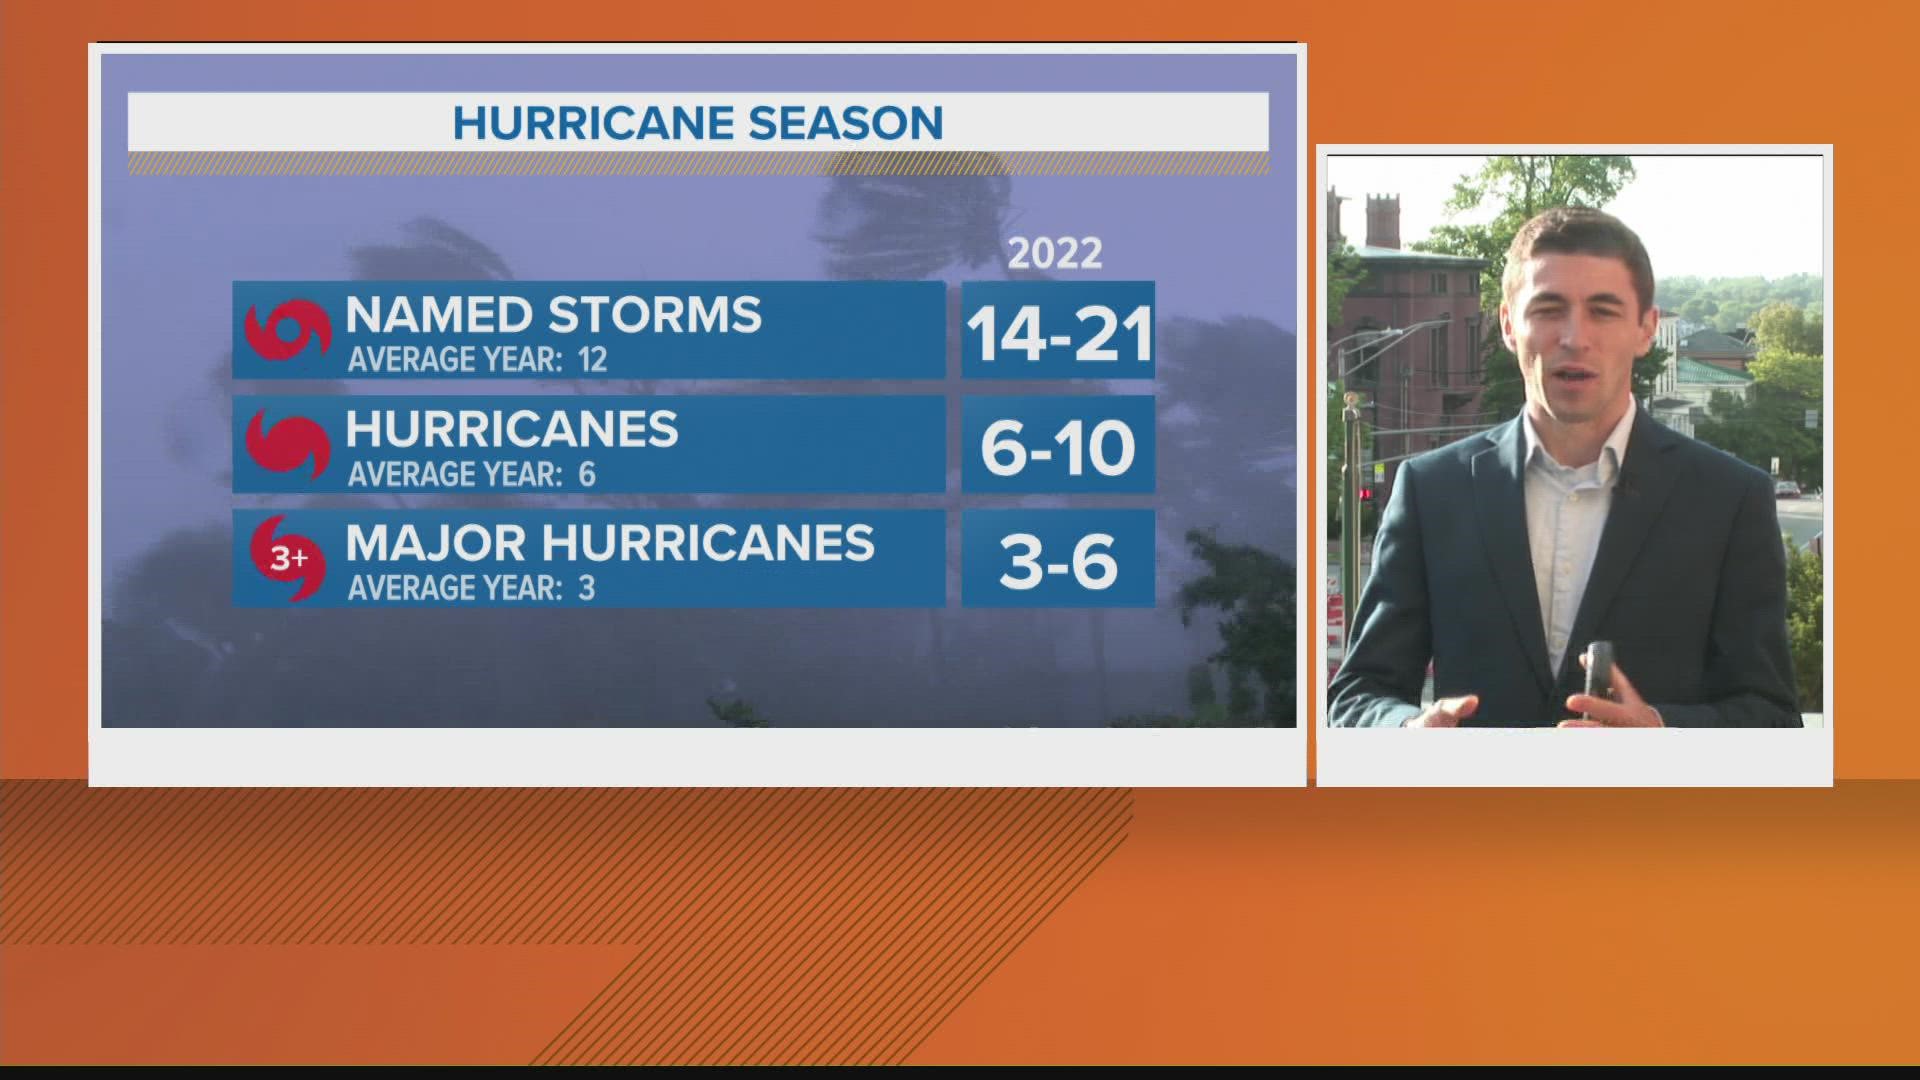 Mike Slifer explains the active hurricane season forecast for 2022